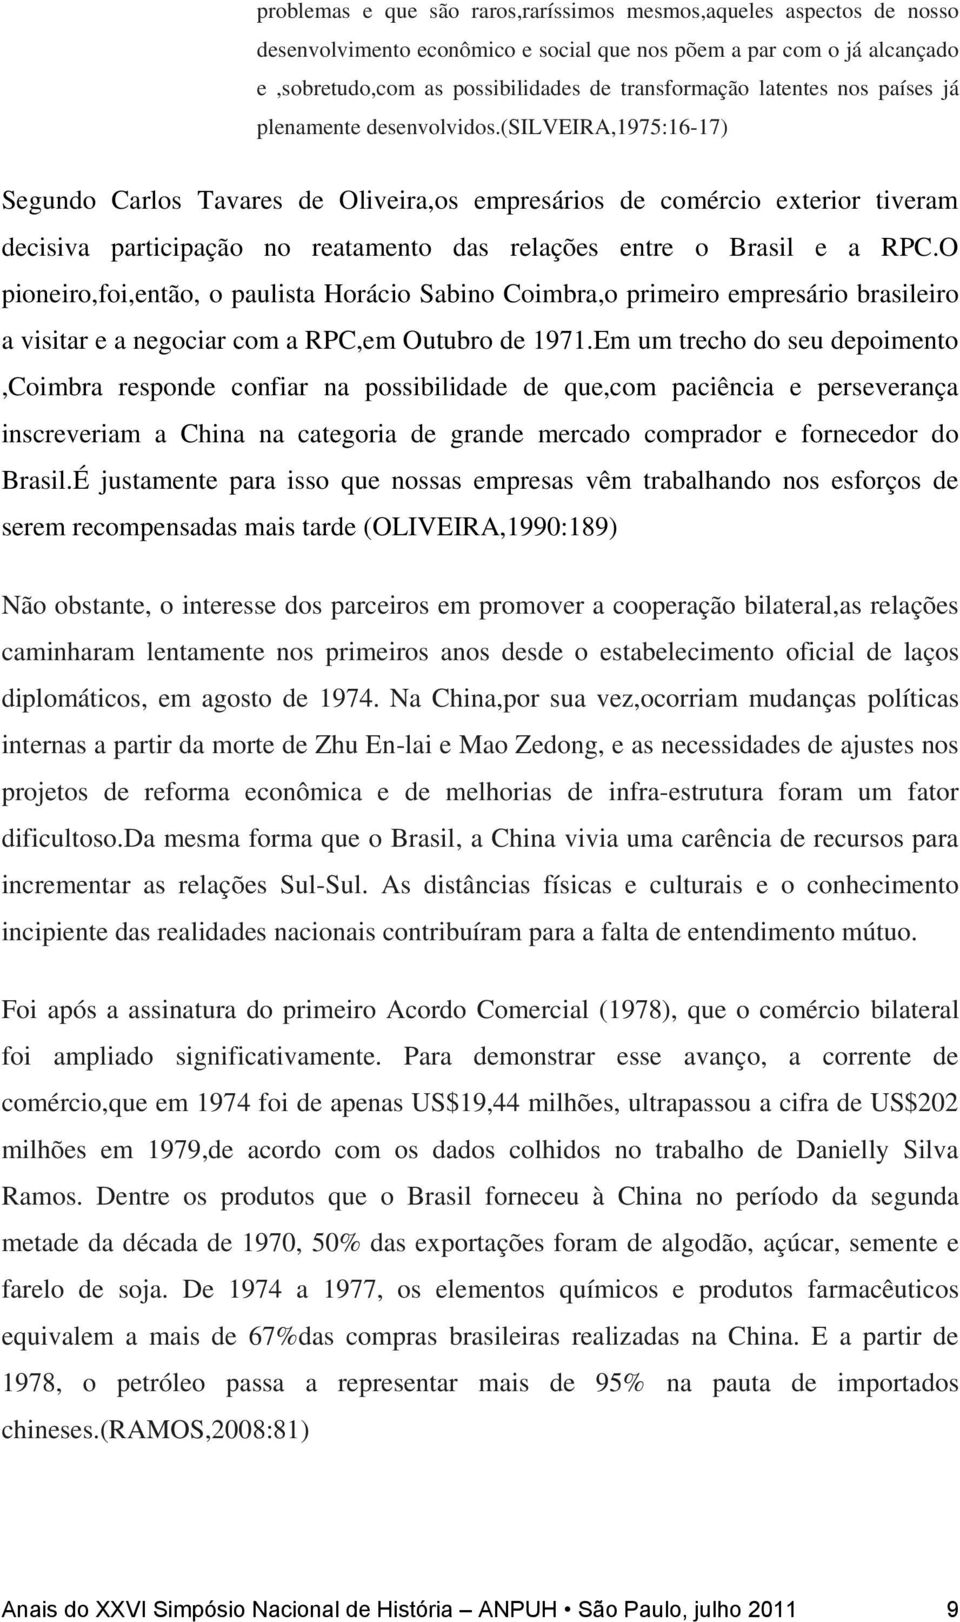 (silveira,1975:16-17) Segundo Carlos Tavares de Oliveira,os empresários de comércio exterior tiveram decisiva participação no reatamento das relações entre o Brasil e a RPC.